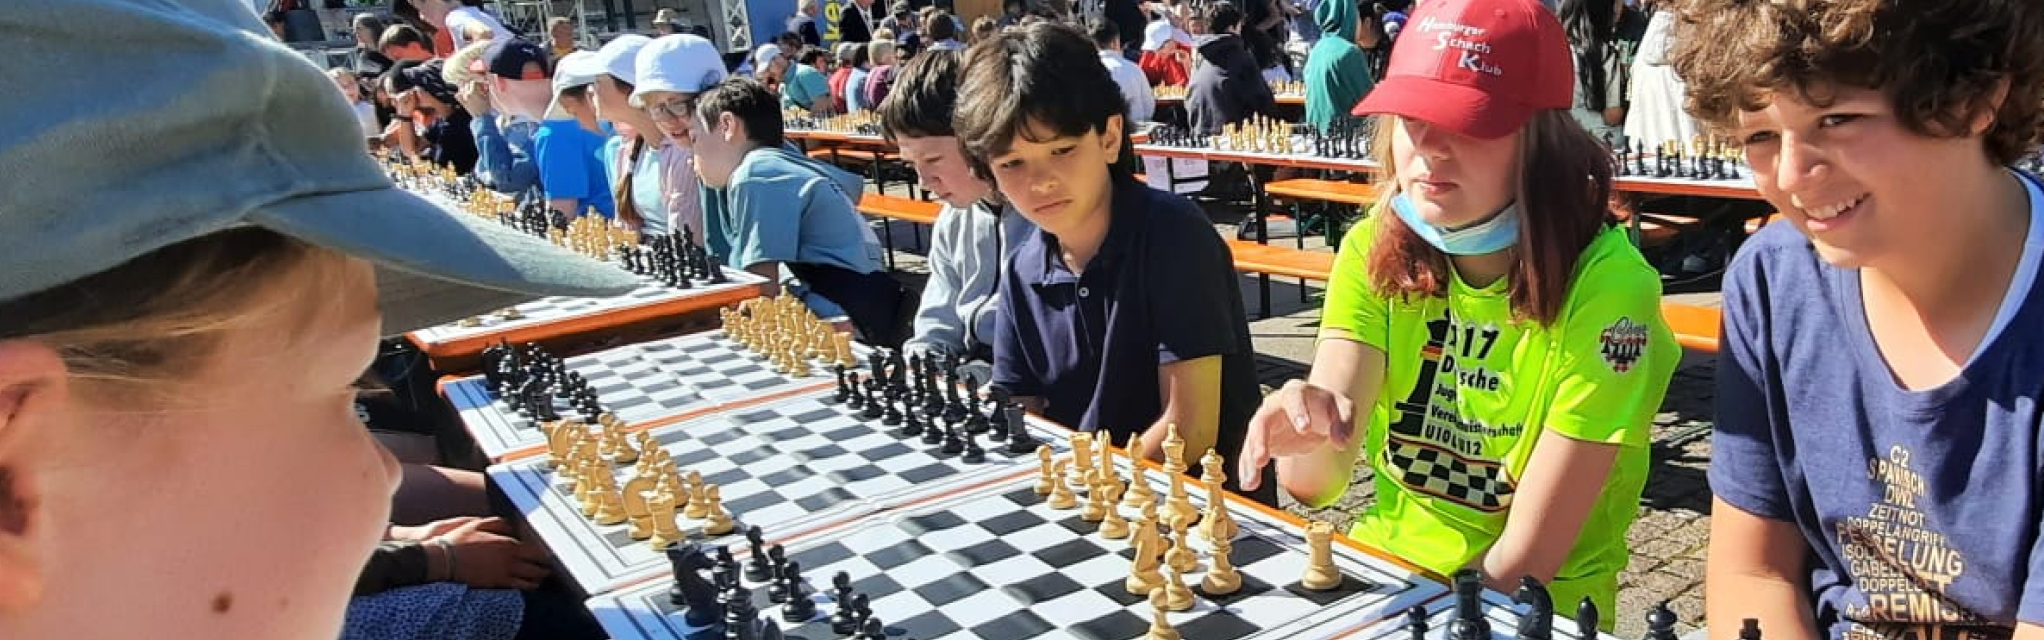 Schüler:innen sitzen vor dem Hamburger Rathaus und spielen Schach